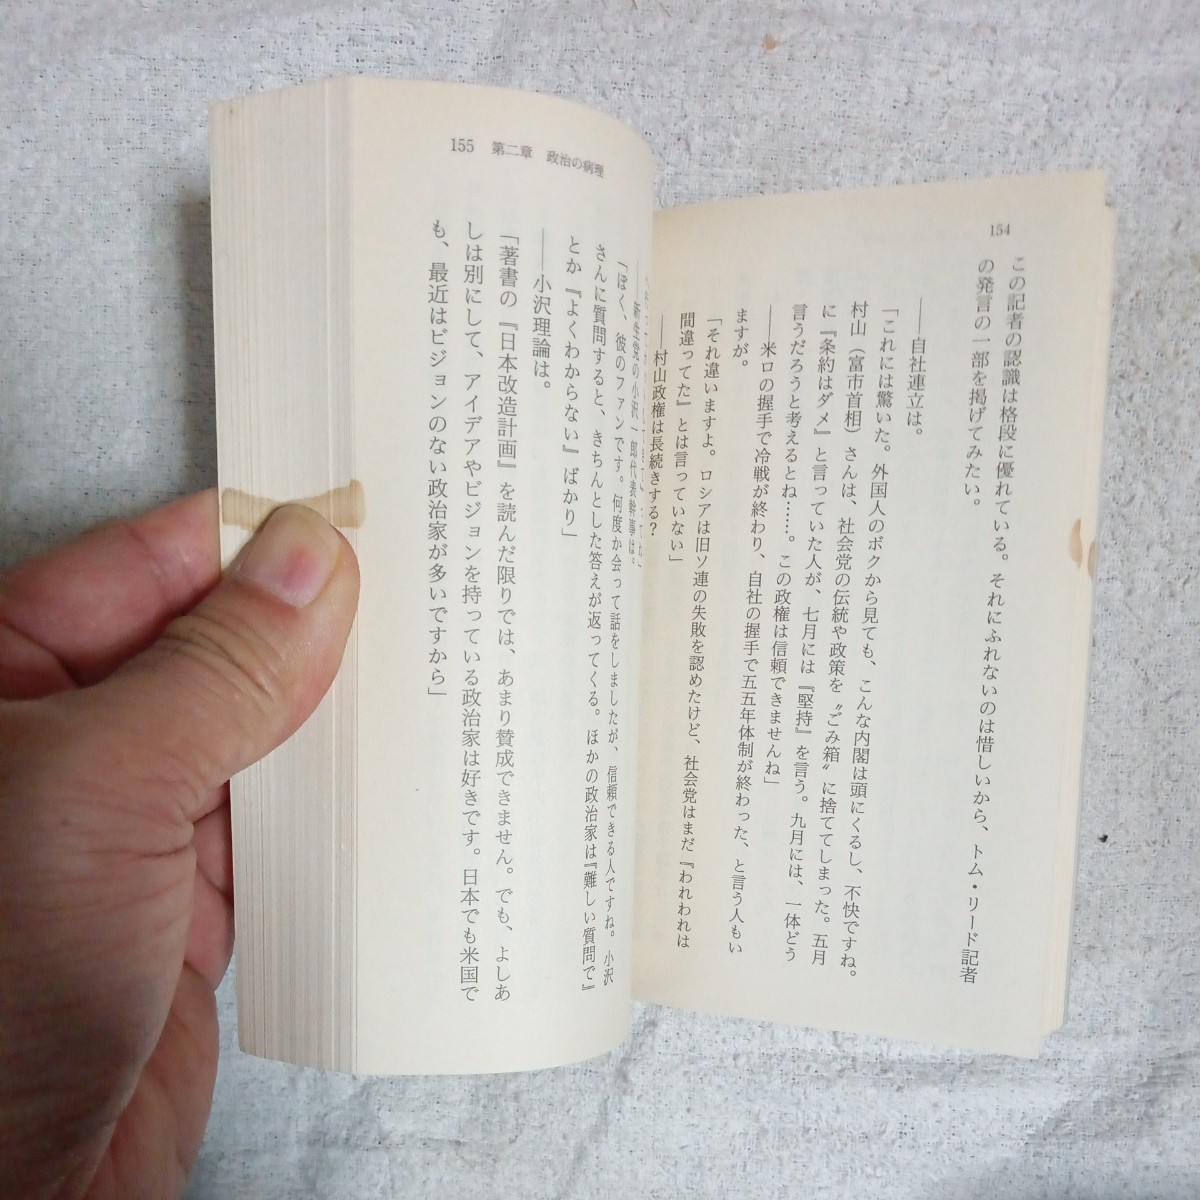  супер .книга@ принцип ( добродетель промежуток библиотека образование серии ) Yoshimoto Takaaki с некоторыми замечаниями Junk 9784198908294